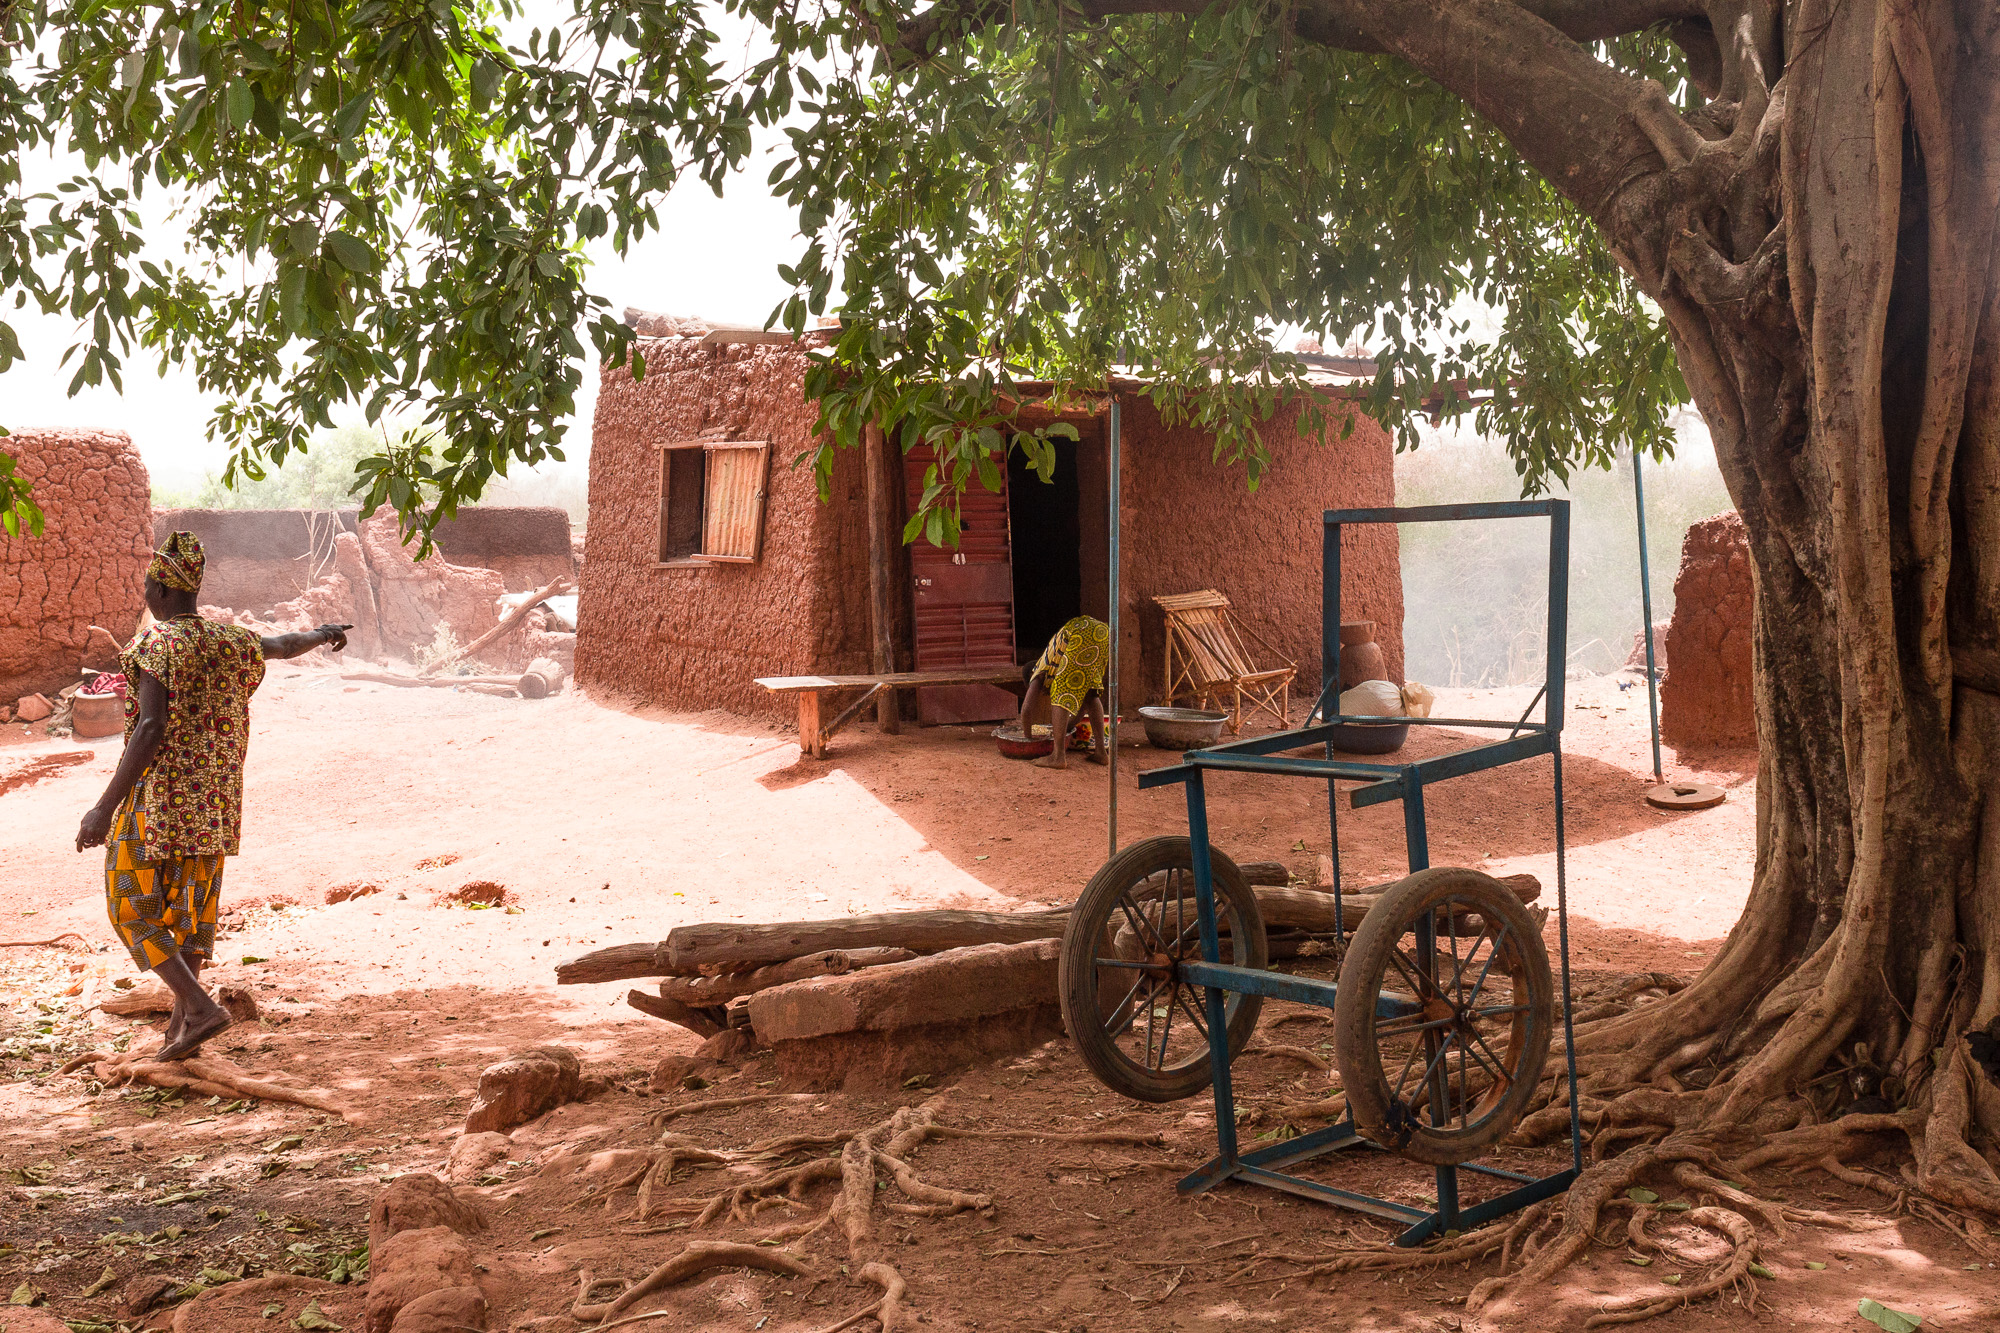 Habitant de Koumi désignant une case de banco au pied d'un ficus, village traditionnel Bobo de Koumi, Burkina Faso